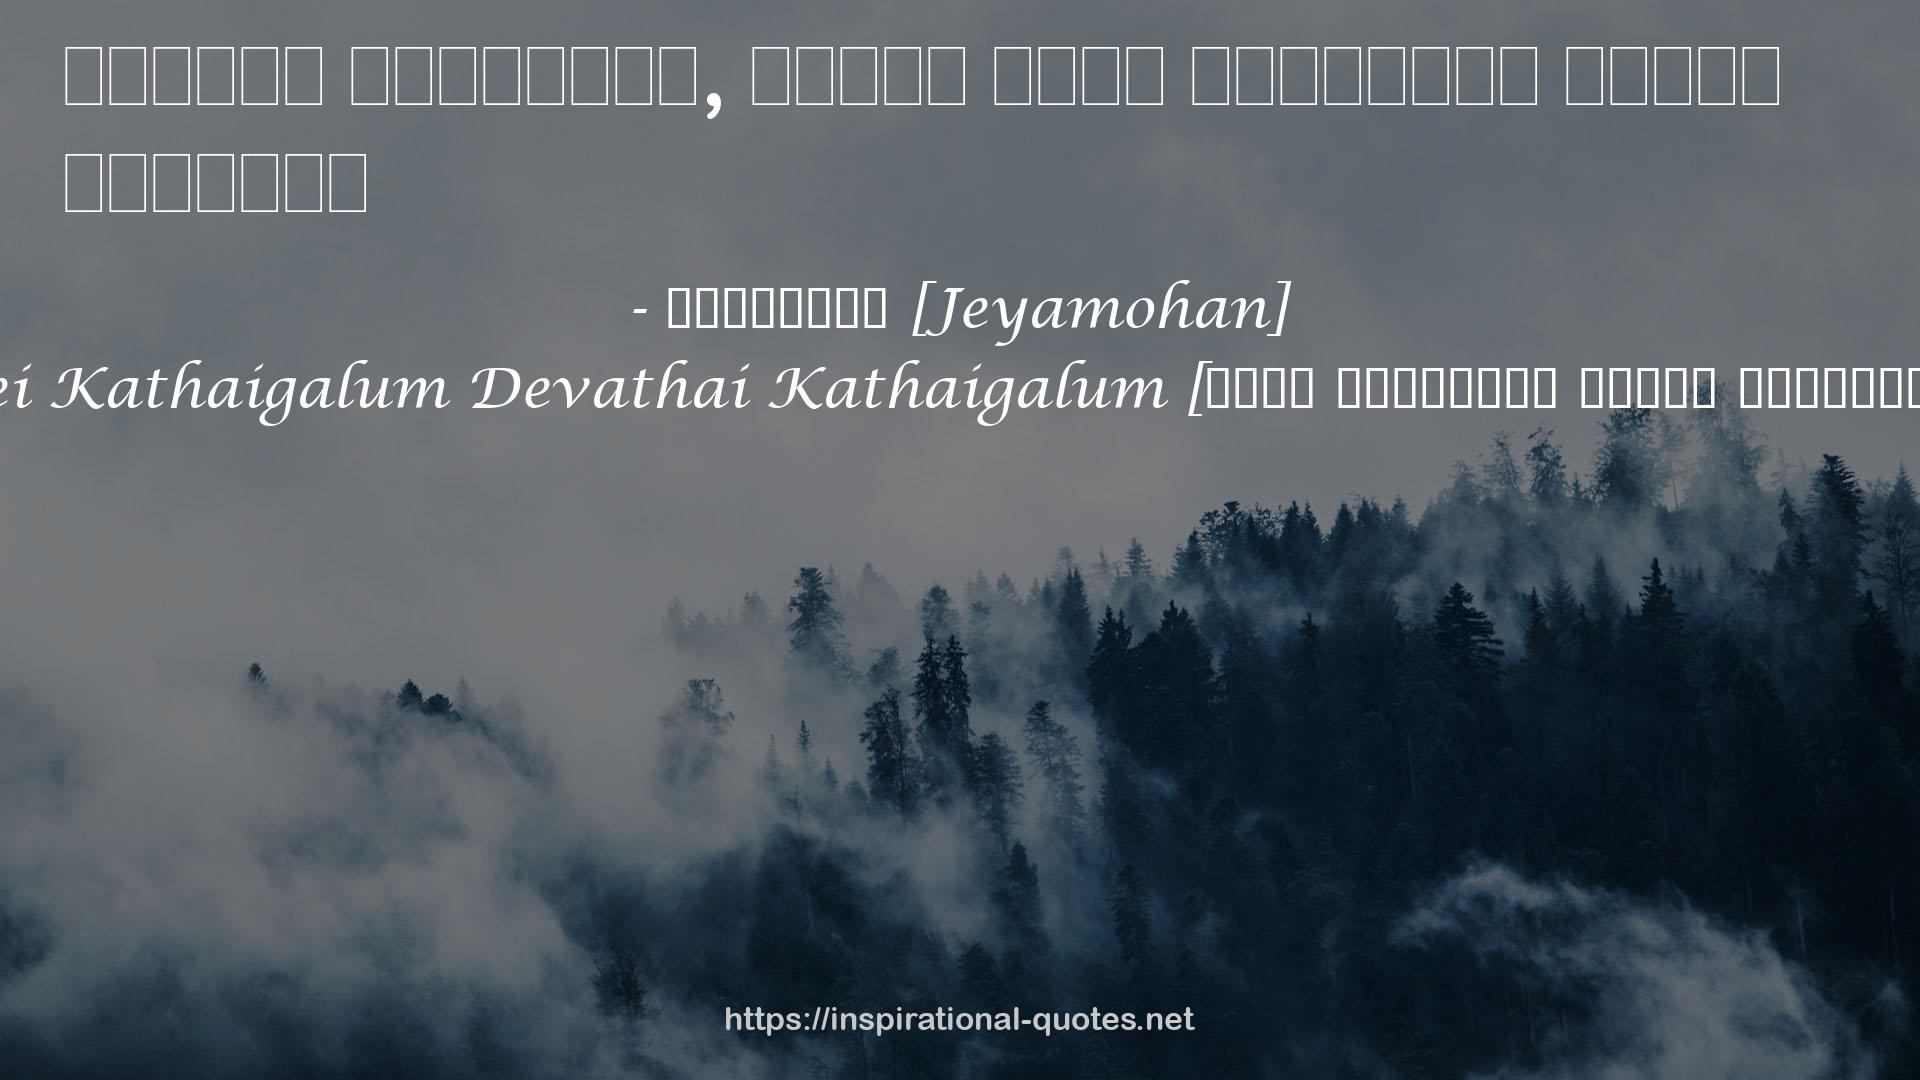 Pei Kathaigalum Devathai Kathaigalum [பேய் கதைகளும் தேவதை கதைகளும்] QUOTES